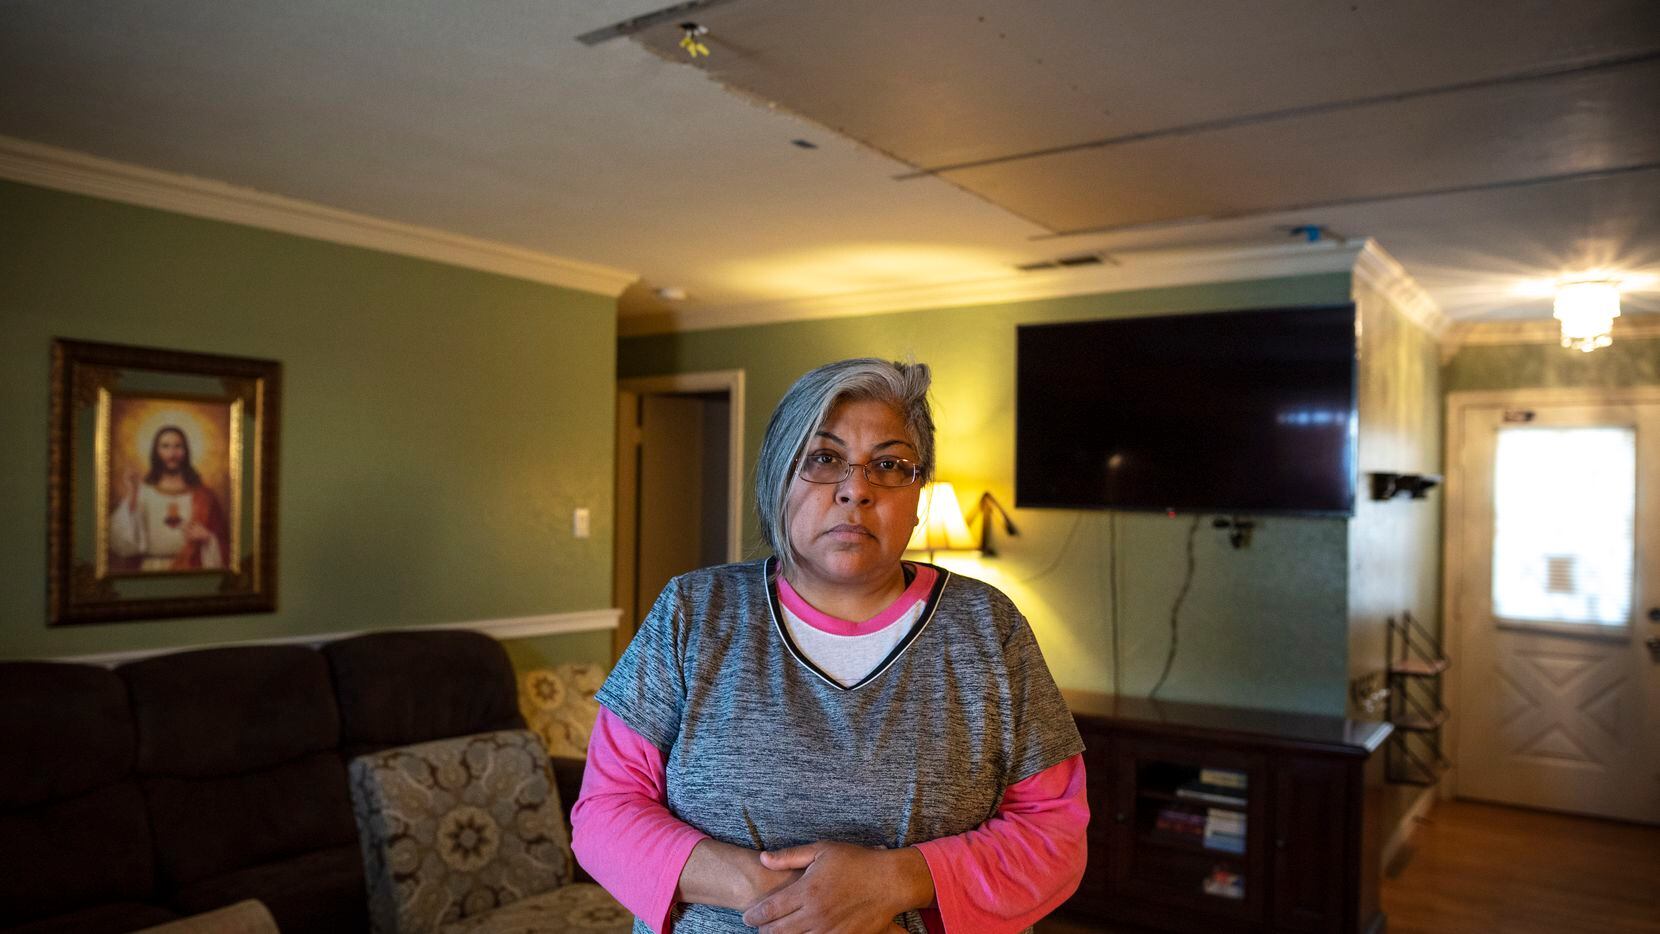 A Irasema Cantú se le derrumbó parte del techo de su sala por una tubería rota que corría por el techo. Para mitigar el daño, ella y su familia taparon el agujero de forma temporal, hasta que puedan repararlo. El presupuesto de las reparaciones por los daños a su casa es de entre $7,000 y $8,000.